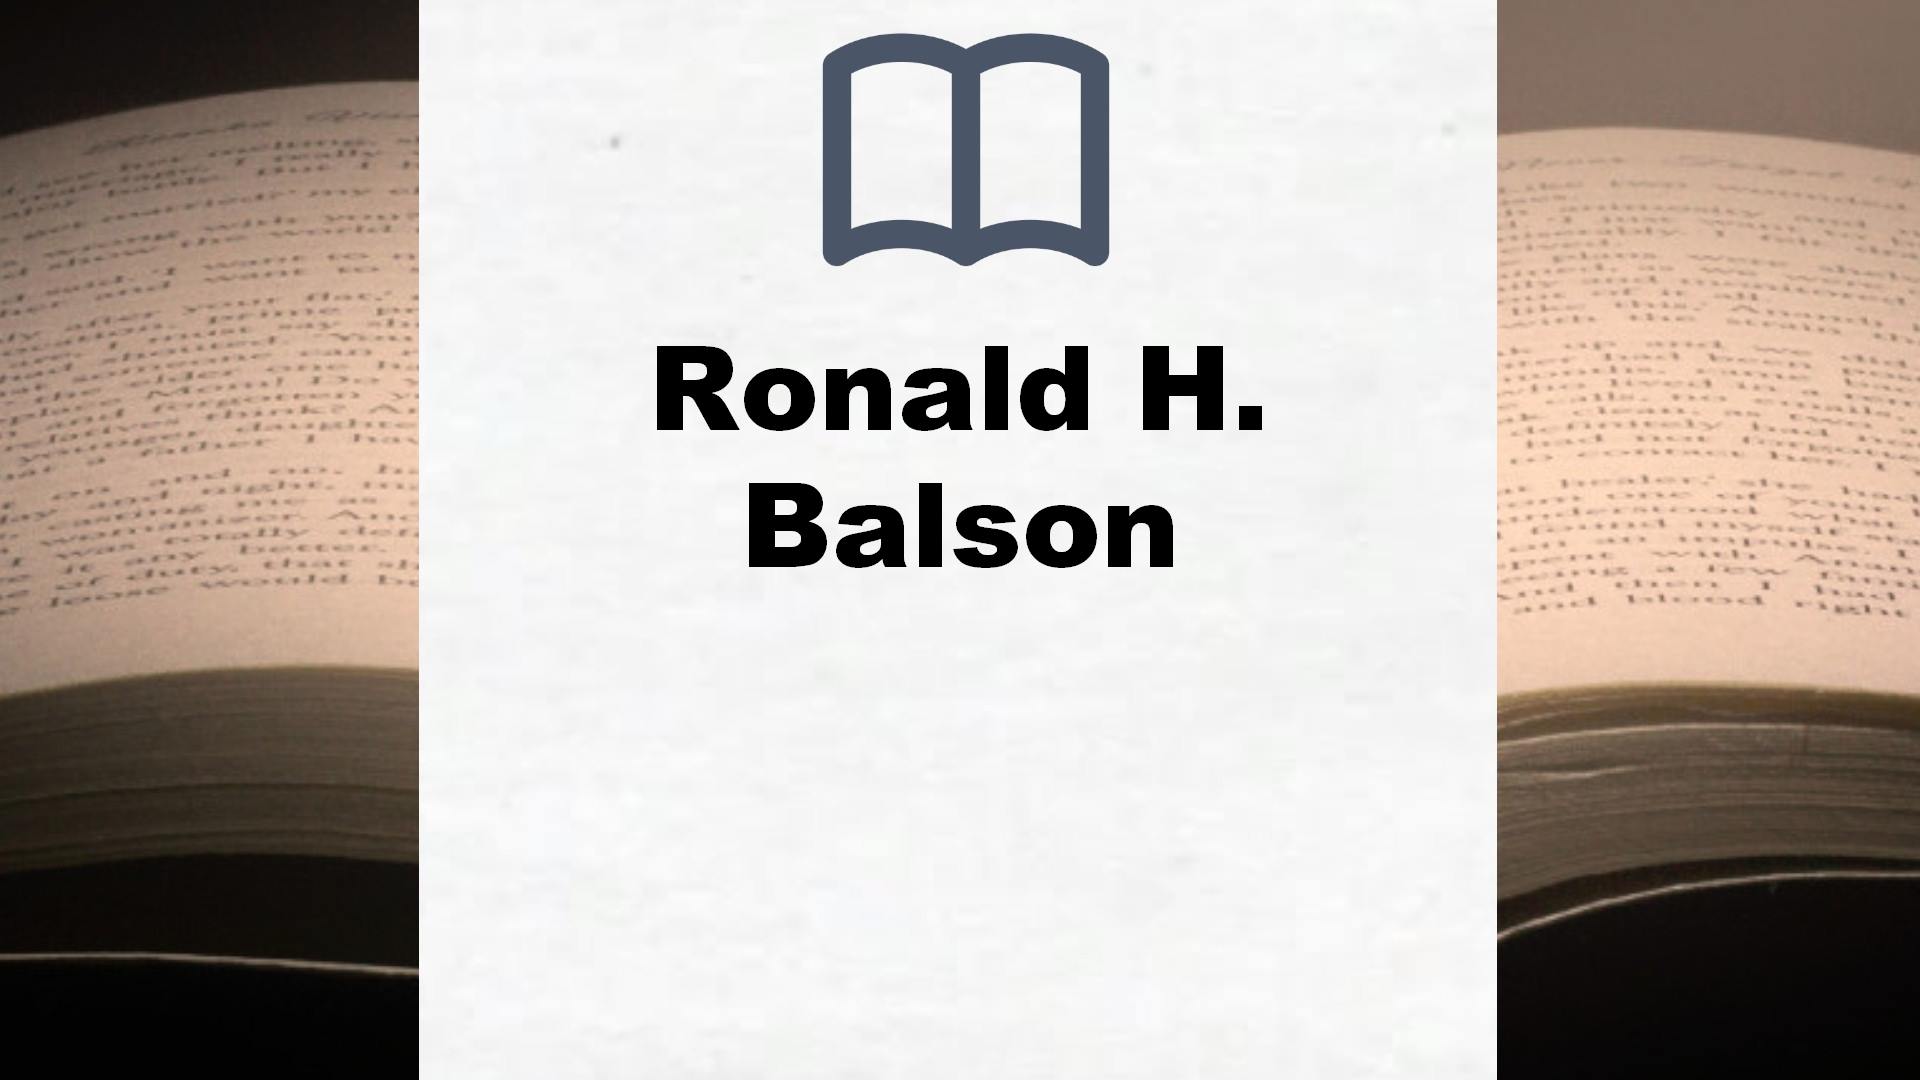 Ronald H. Balson Bücher